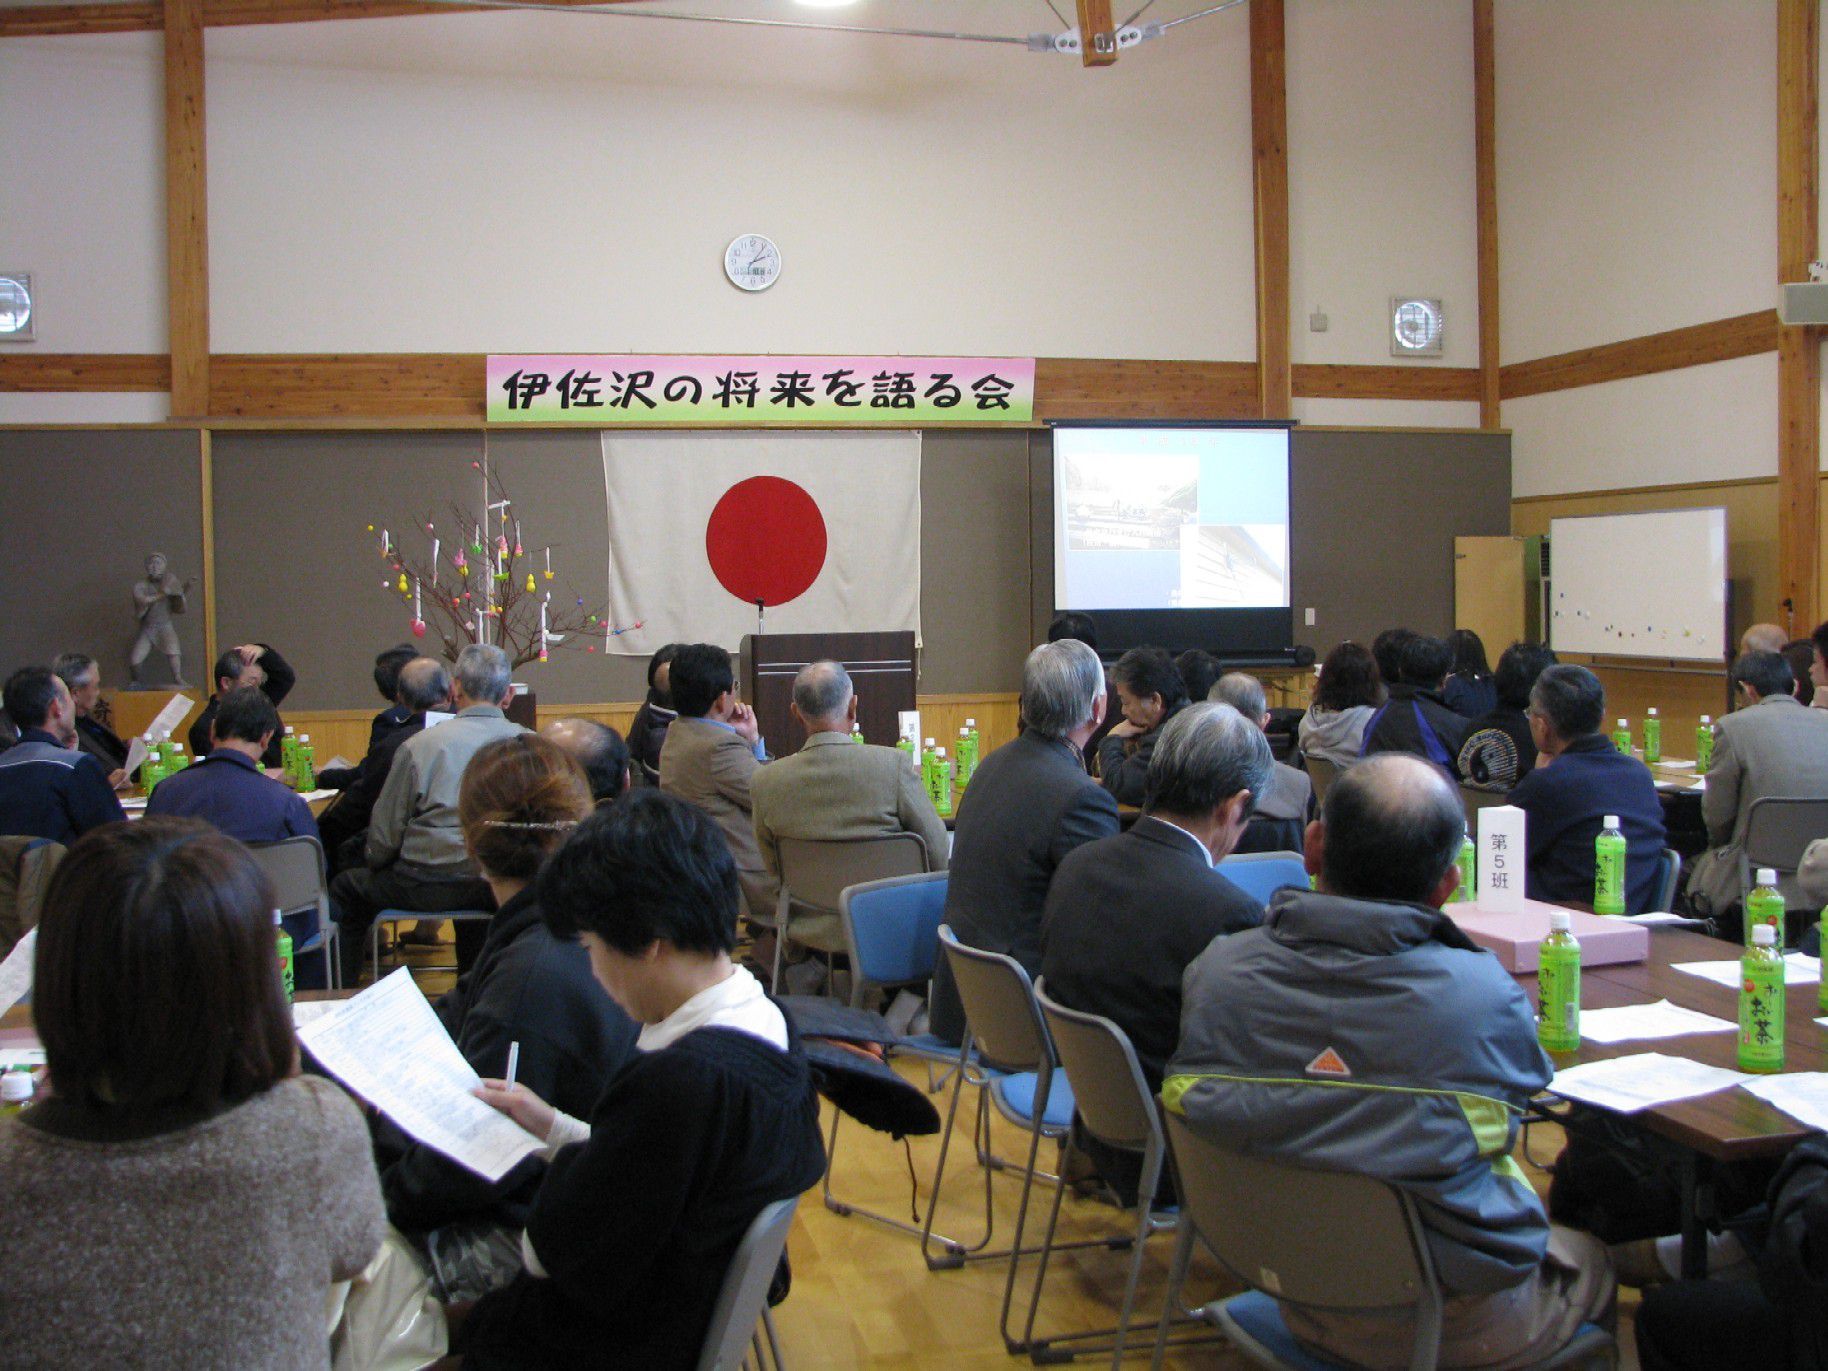 伊佐沢の将来を語る会を開催しました。